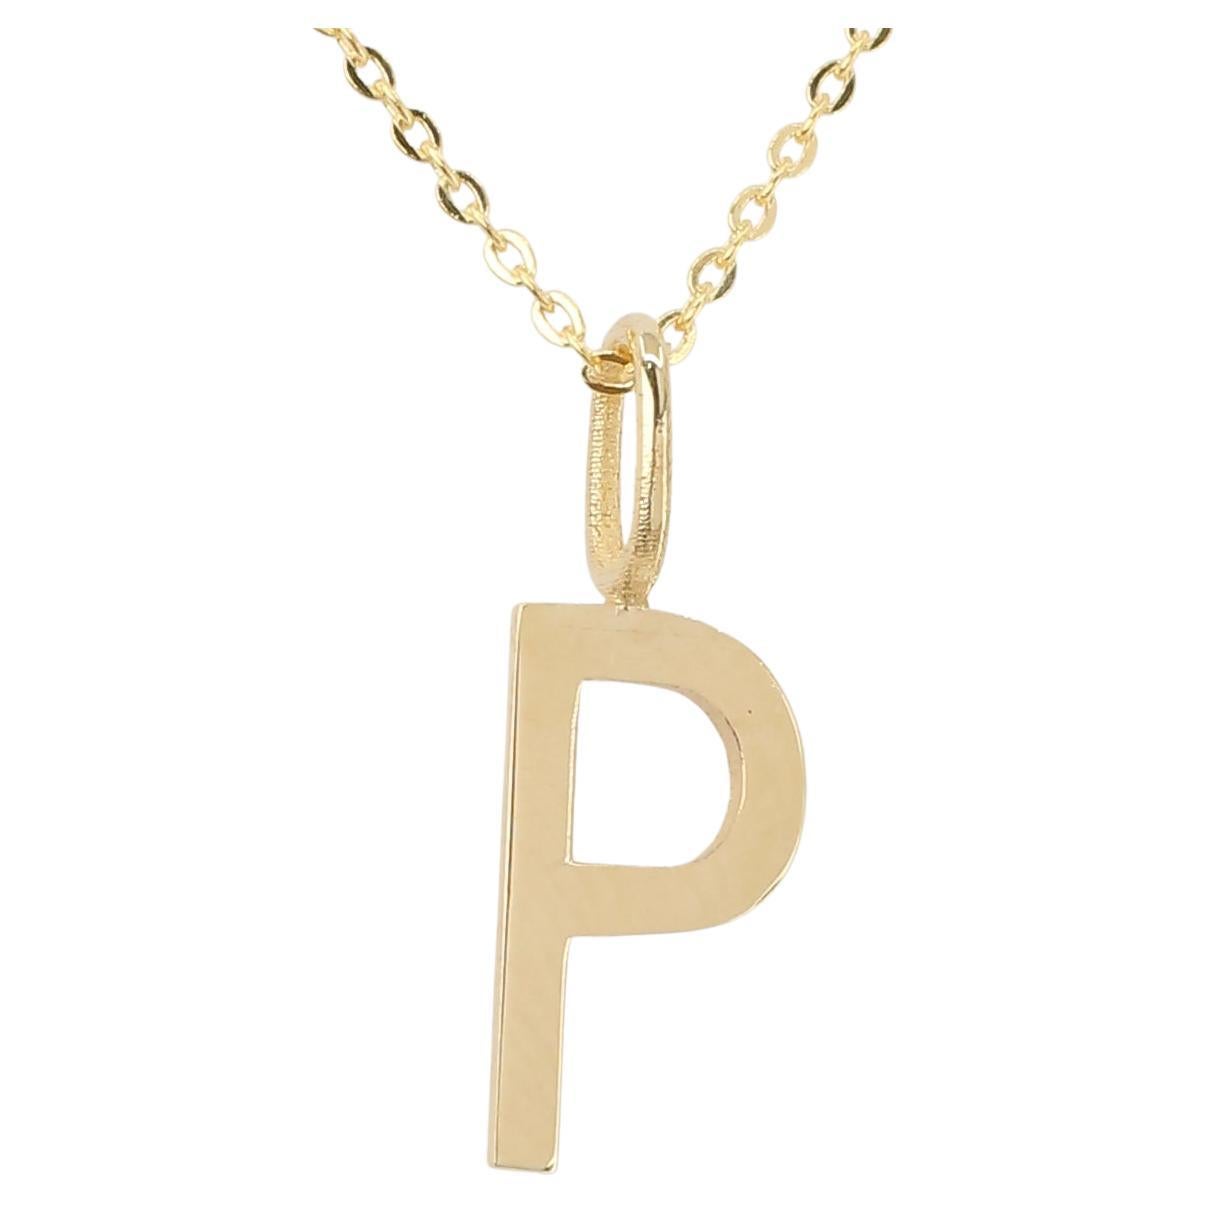 Colliers en or 14 carats, modèles de colliers à lettres, collier- collier lettre P en or